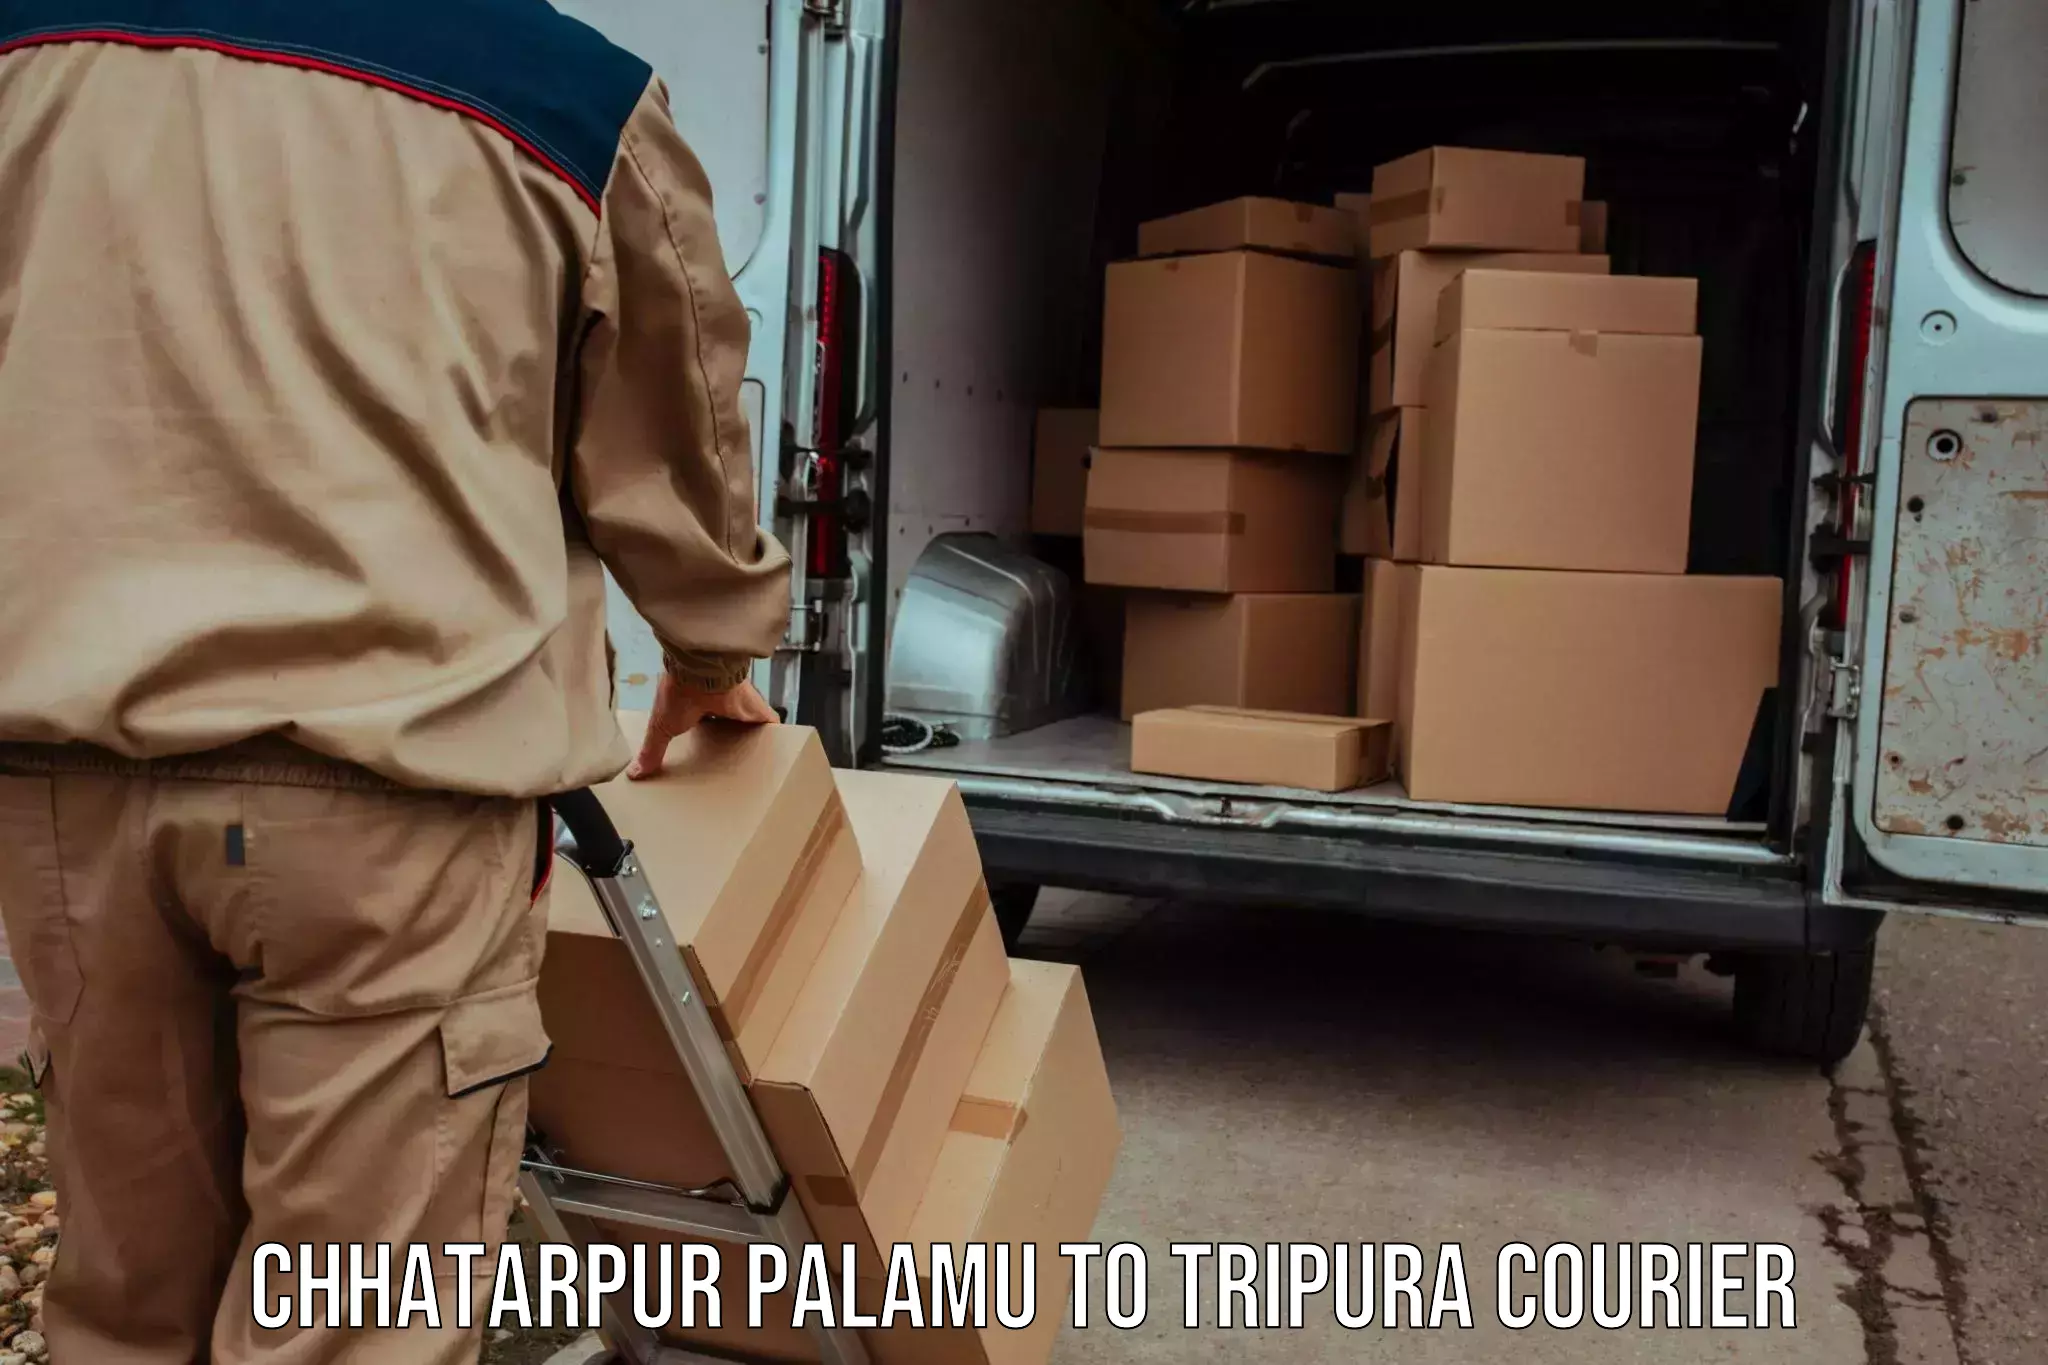 Express logistics providers Chhatarpur Palamu to Aambasa